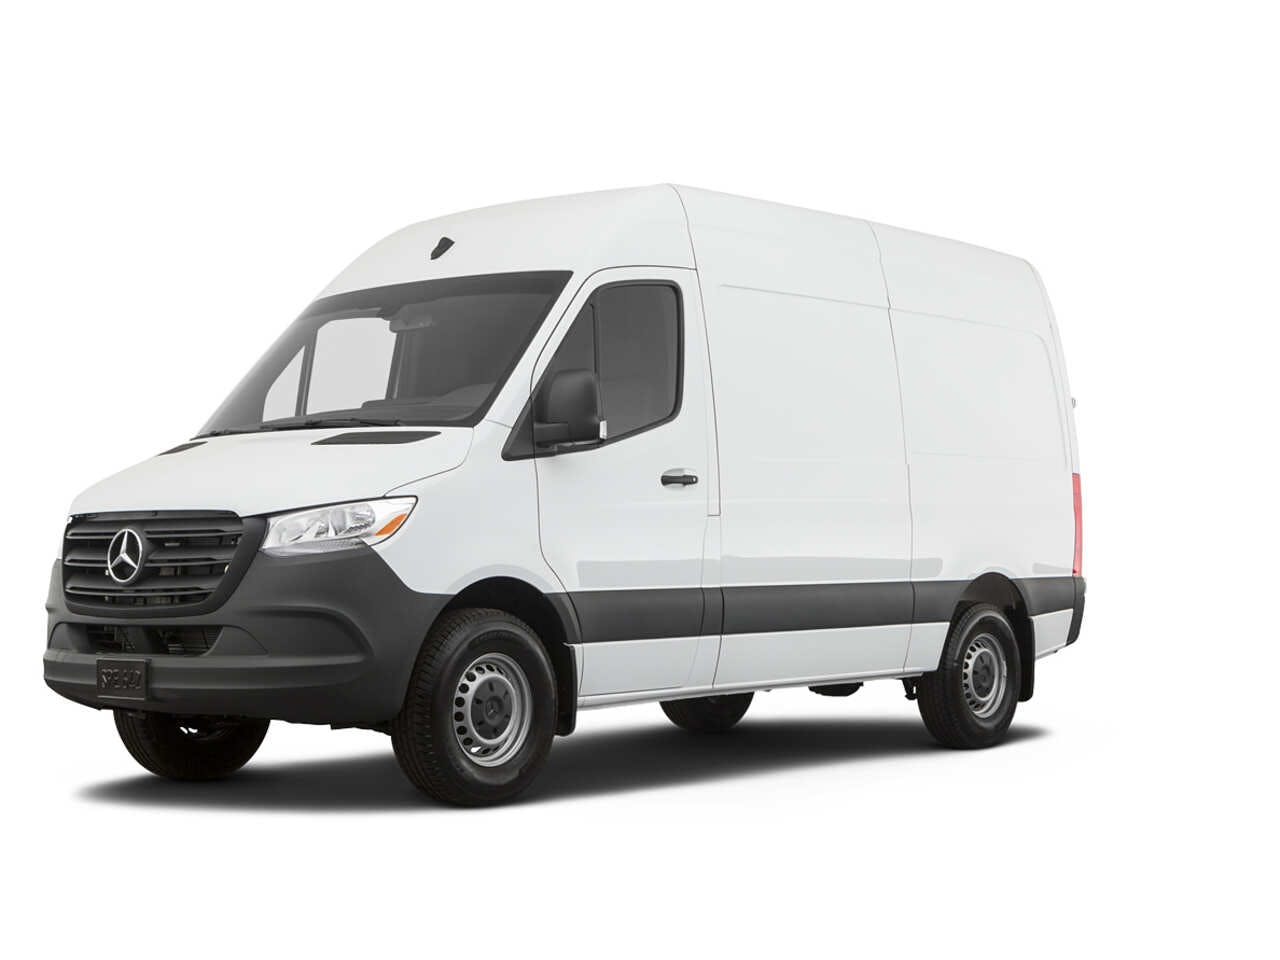 2021 Cargo Van Deals Specials - TrueCar